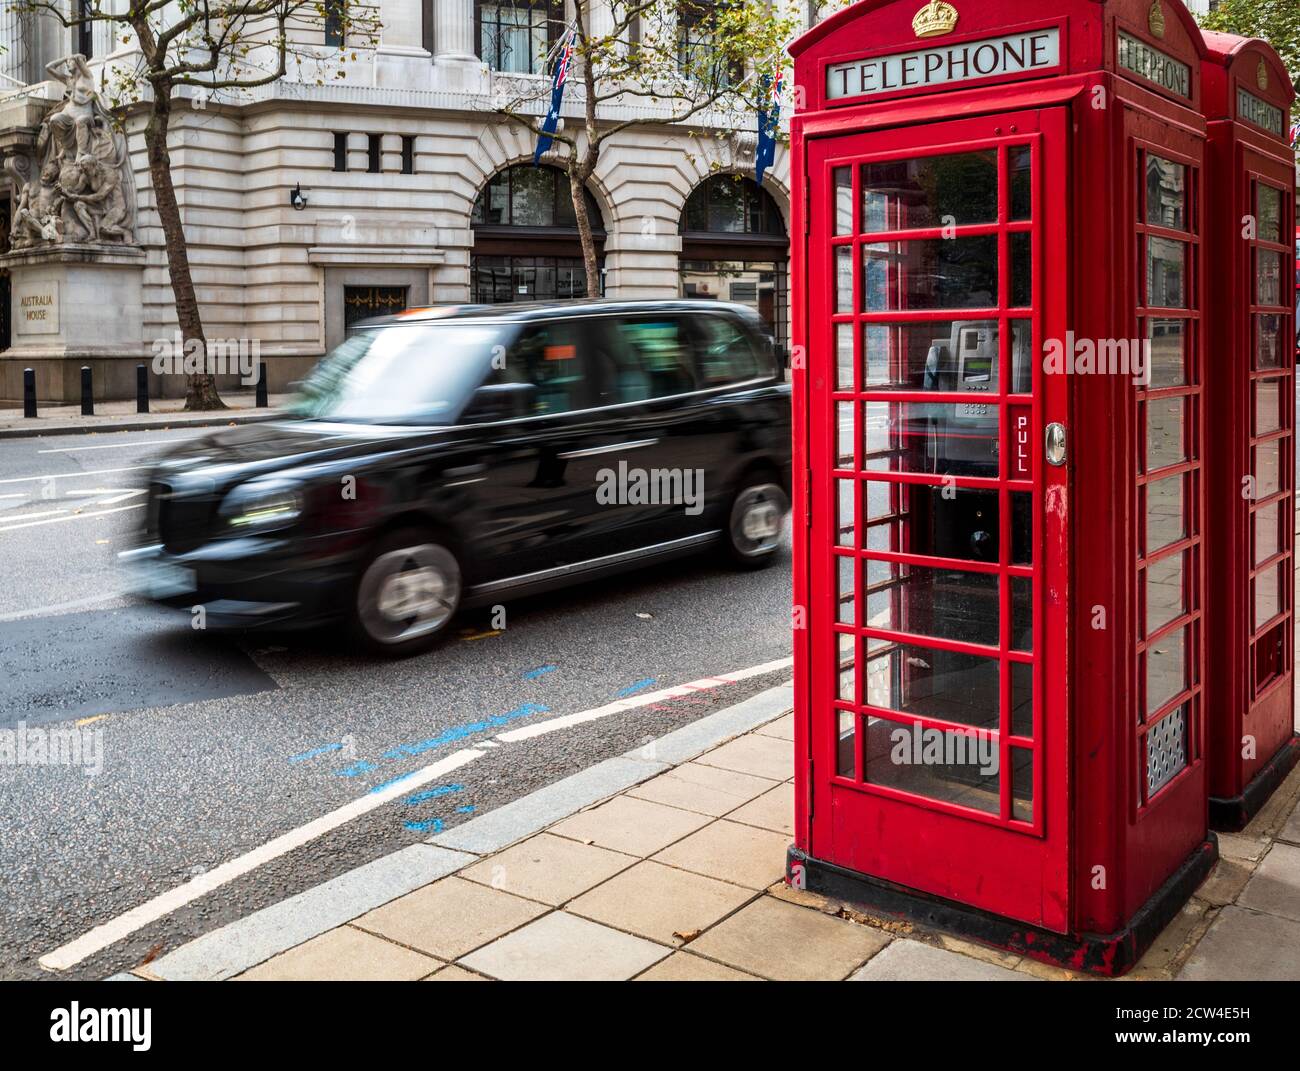 Emblématique Londres - un taxi londonien passe deux boîtes téléphoniques rouges traditionnelles dans le centre de Londres. Mouvement flou du mouvement du taxi. Tourisme de Londres. Banque D'Images